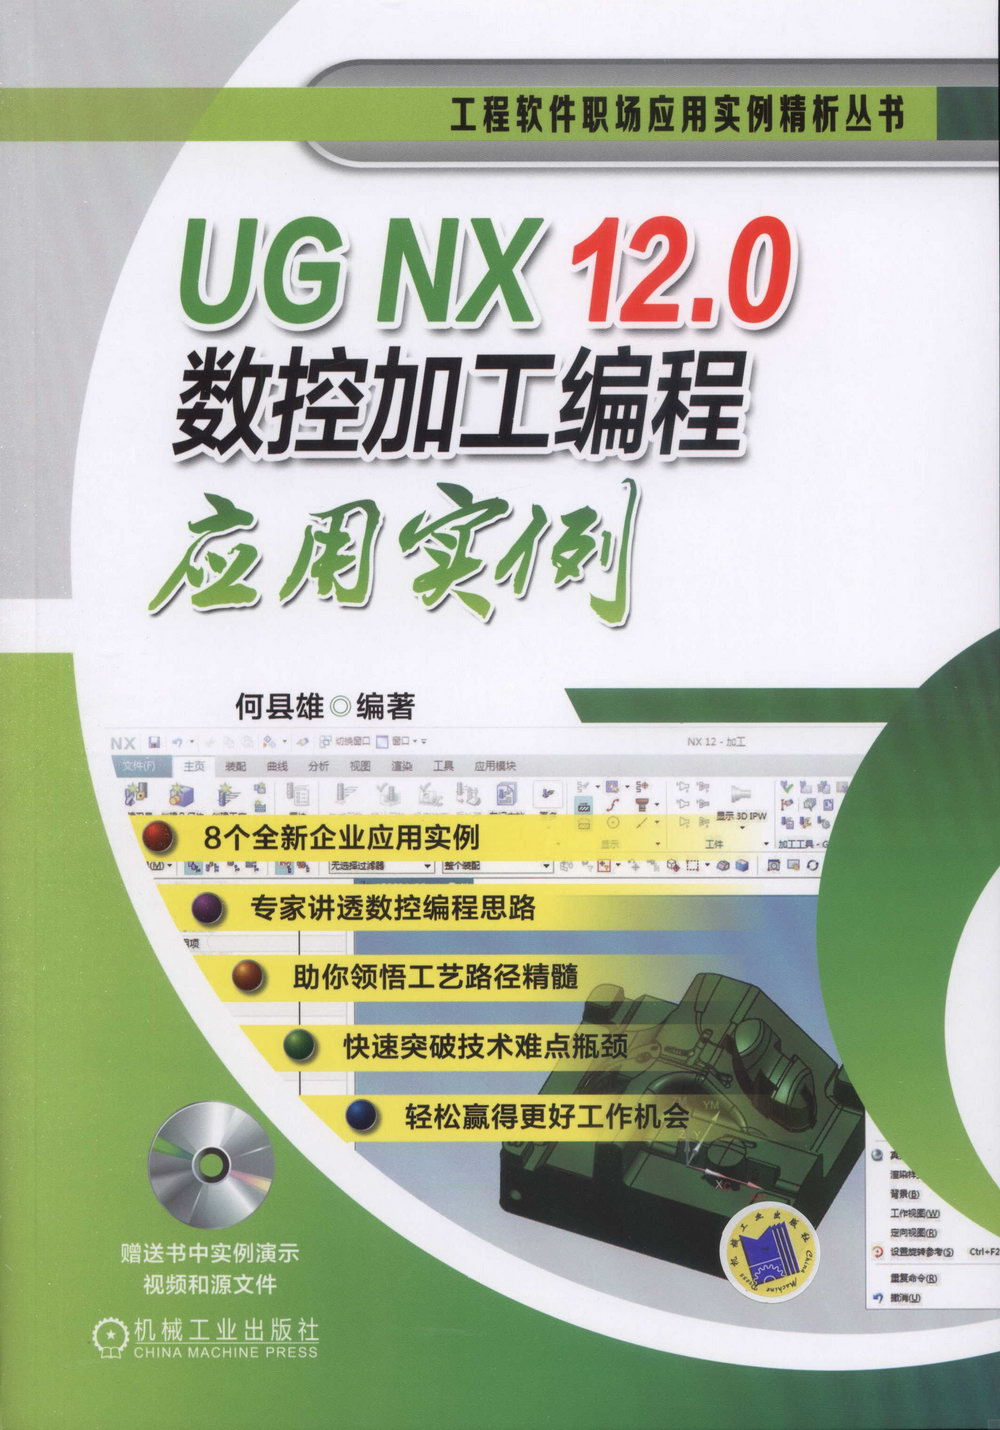 UG NX 12.0數控加工編程應用實例